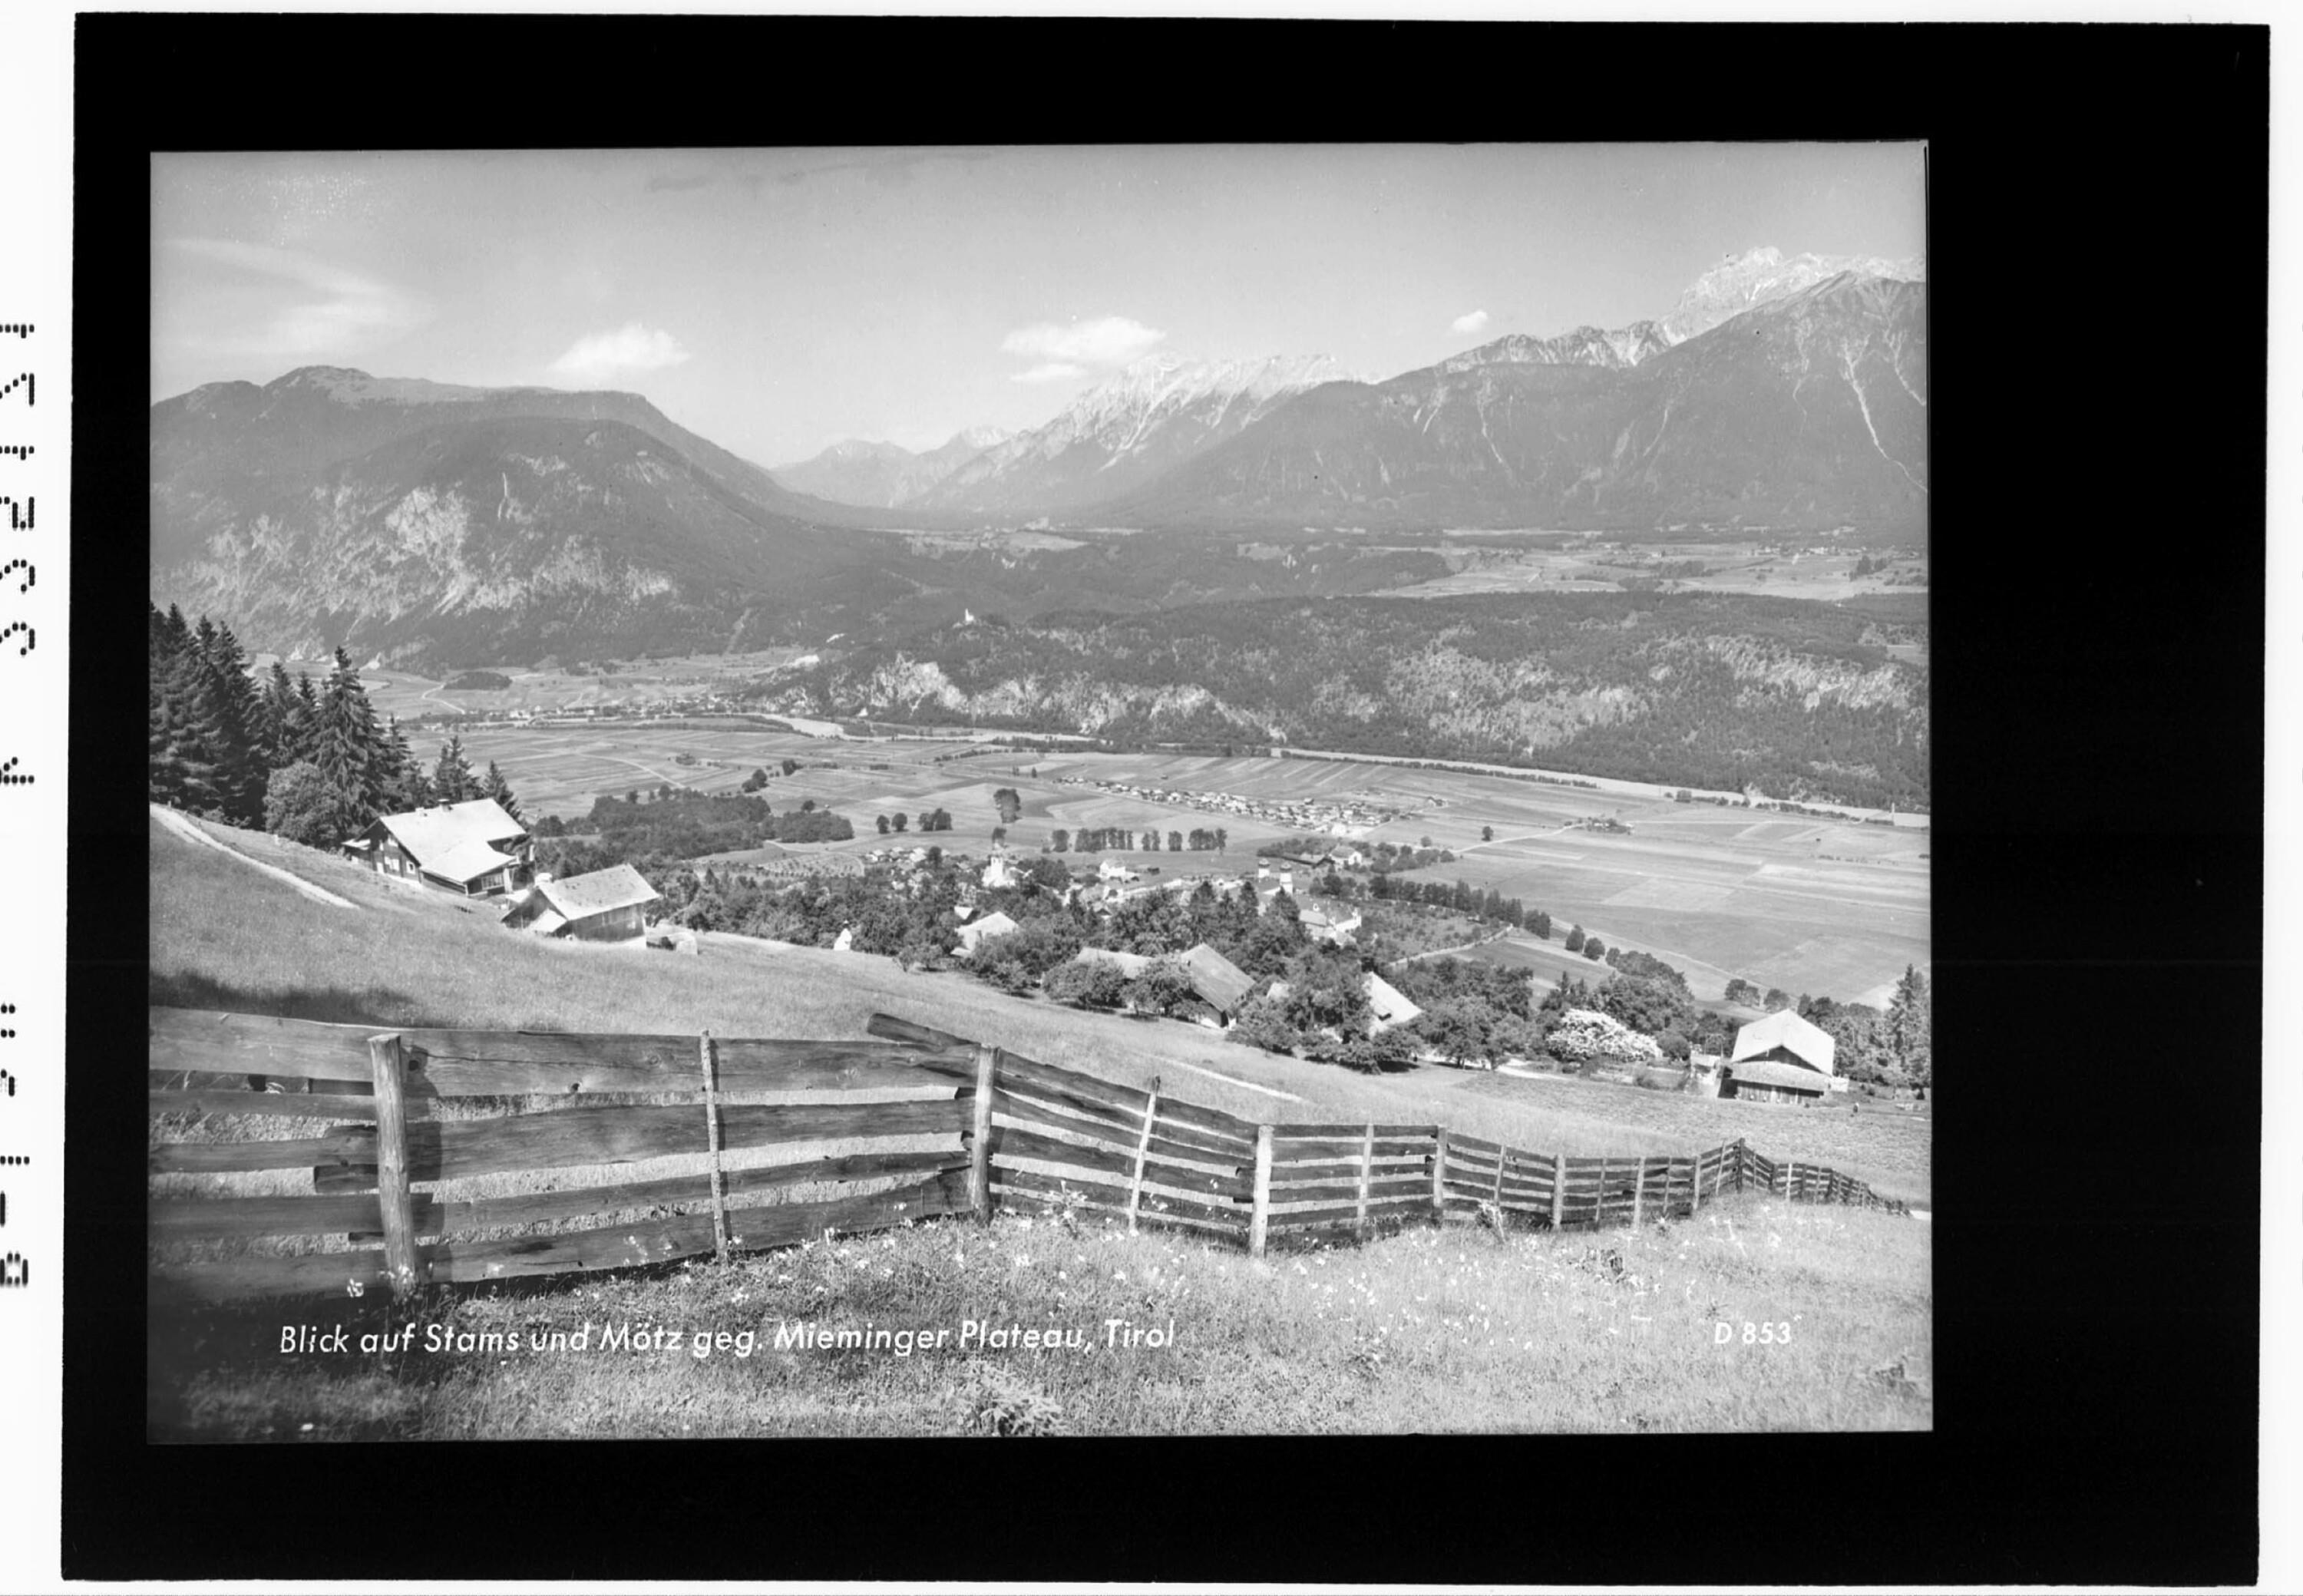 Blick auf Stams und Mötz gegen Mieminger Plateau / Tirol></div>


    <hr>
    <div class=